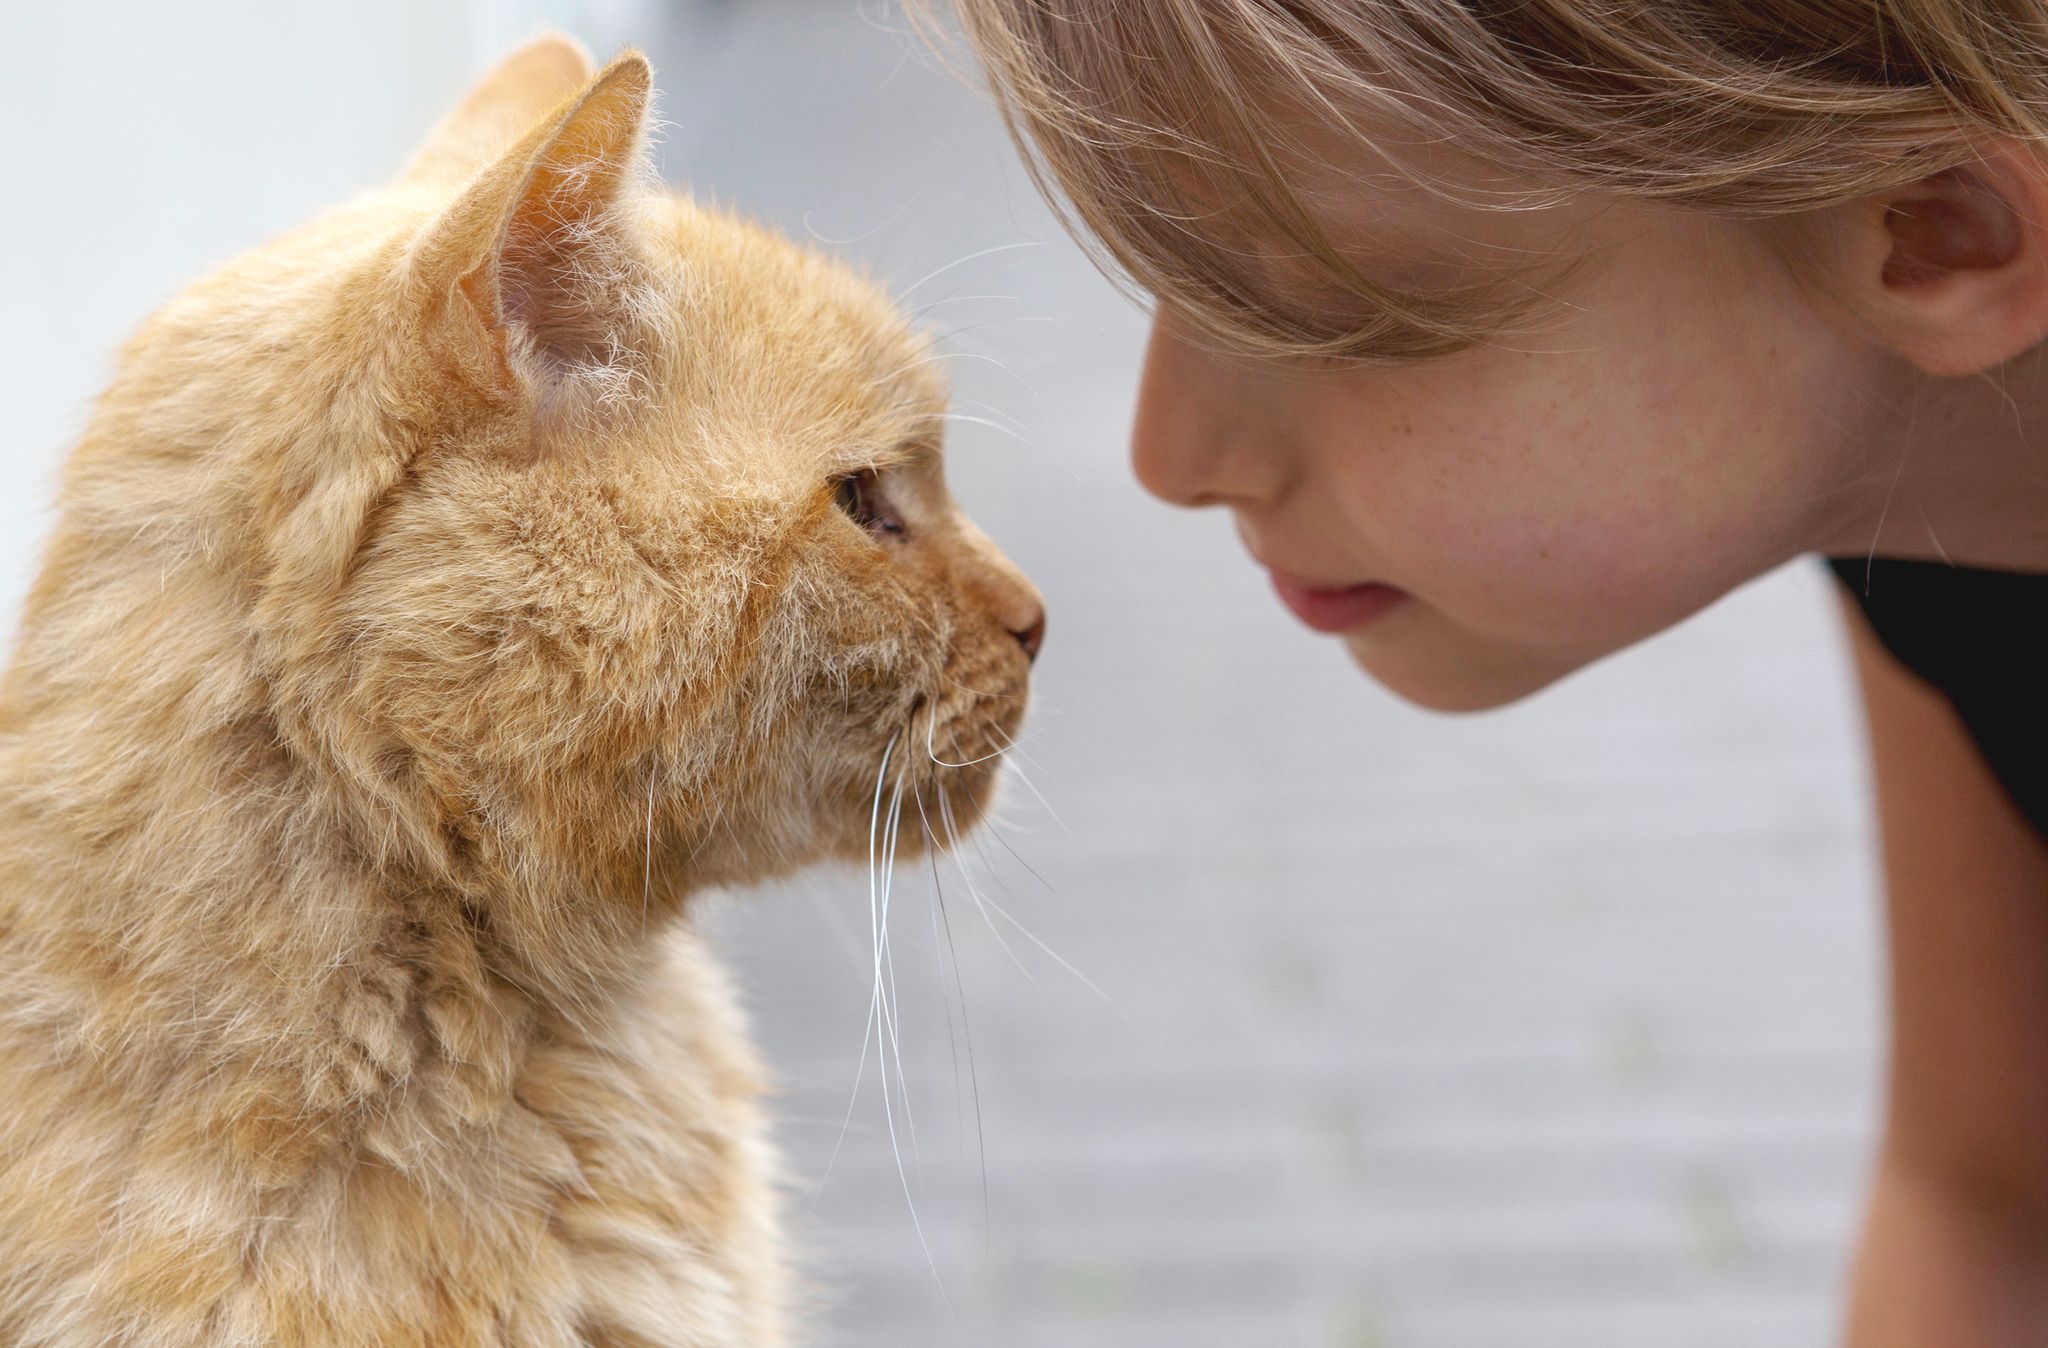 Humanos y gatos: ¿es una relación de amor o de simple conveniencia?Foto: Silvia Marks/dpa